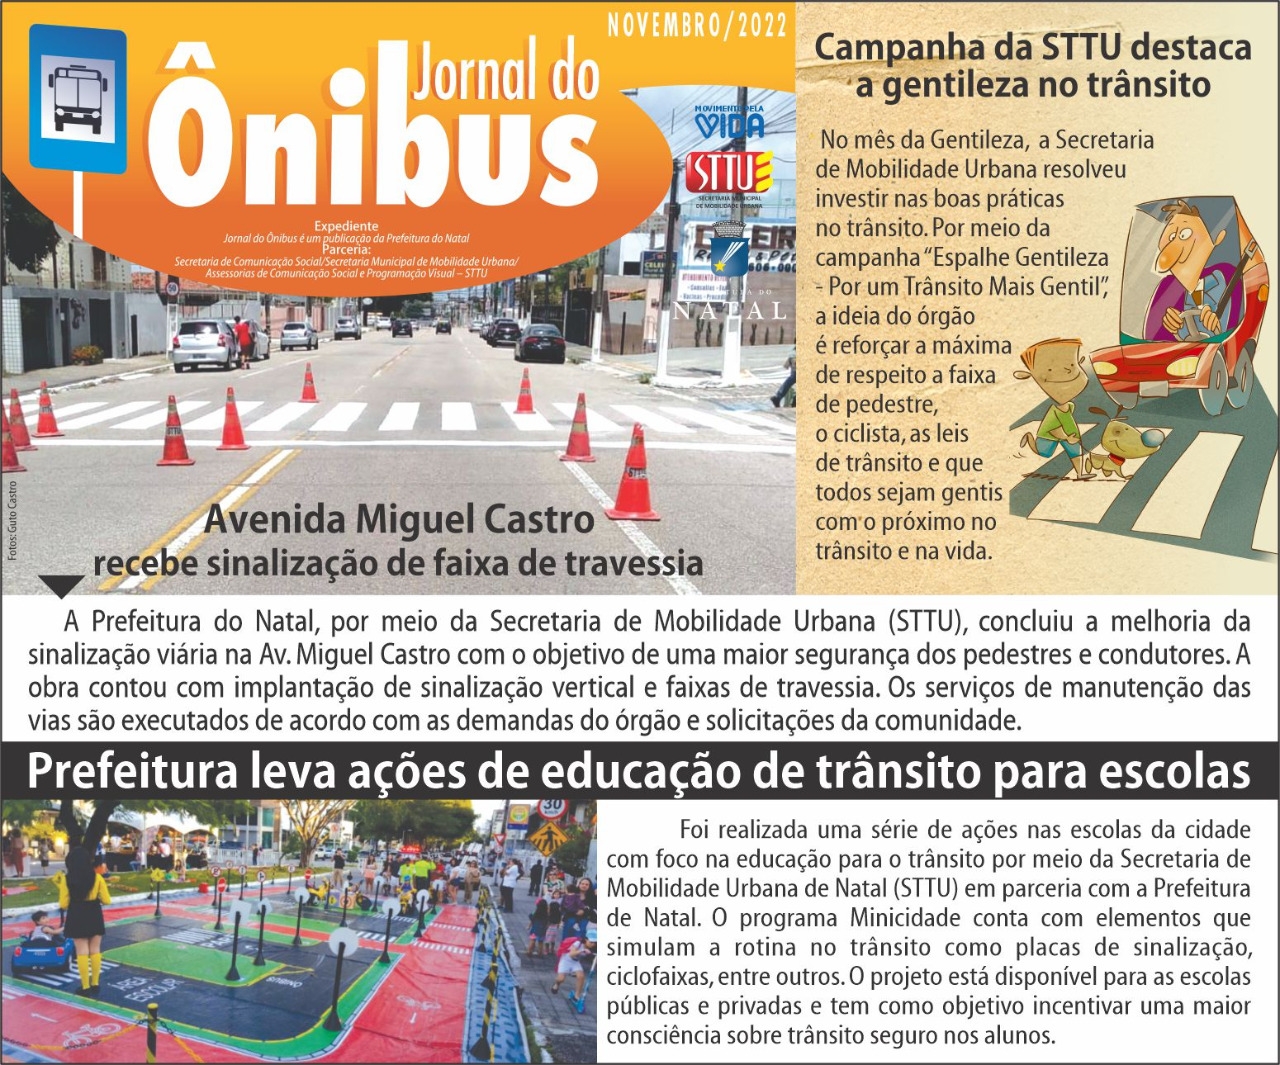 Nova edição do Jornal do Ônibus destaca a gentileza no trânsito